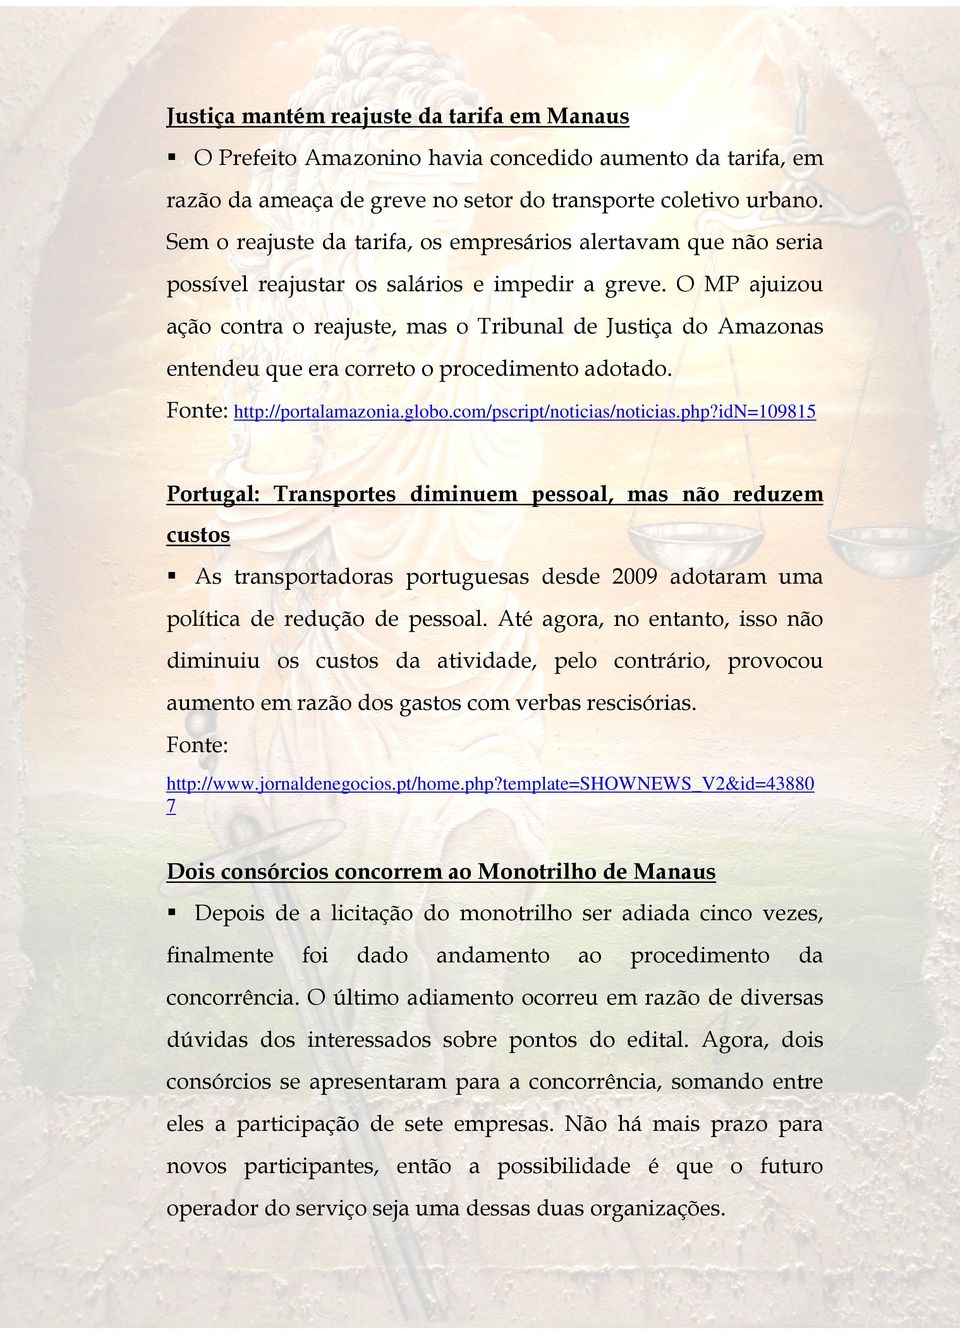 O MP ajuizou ação contra o reajuste, mas o Tribunal de Justiça do Amazonas entendeu que era correto o procedimento adotado. http://portalamazonia.globo.com/pscript/noticias/noticias.php?